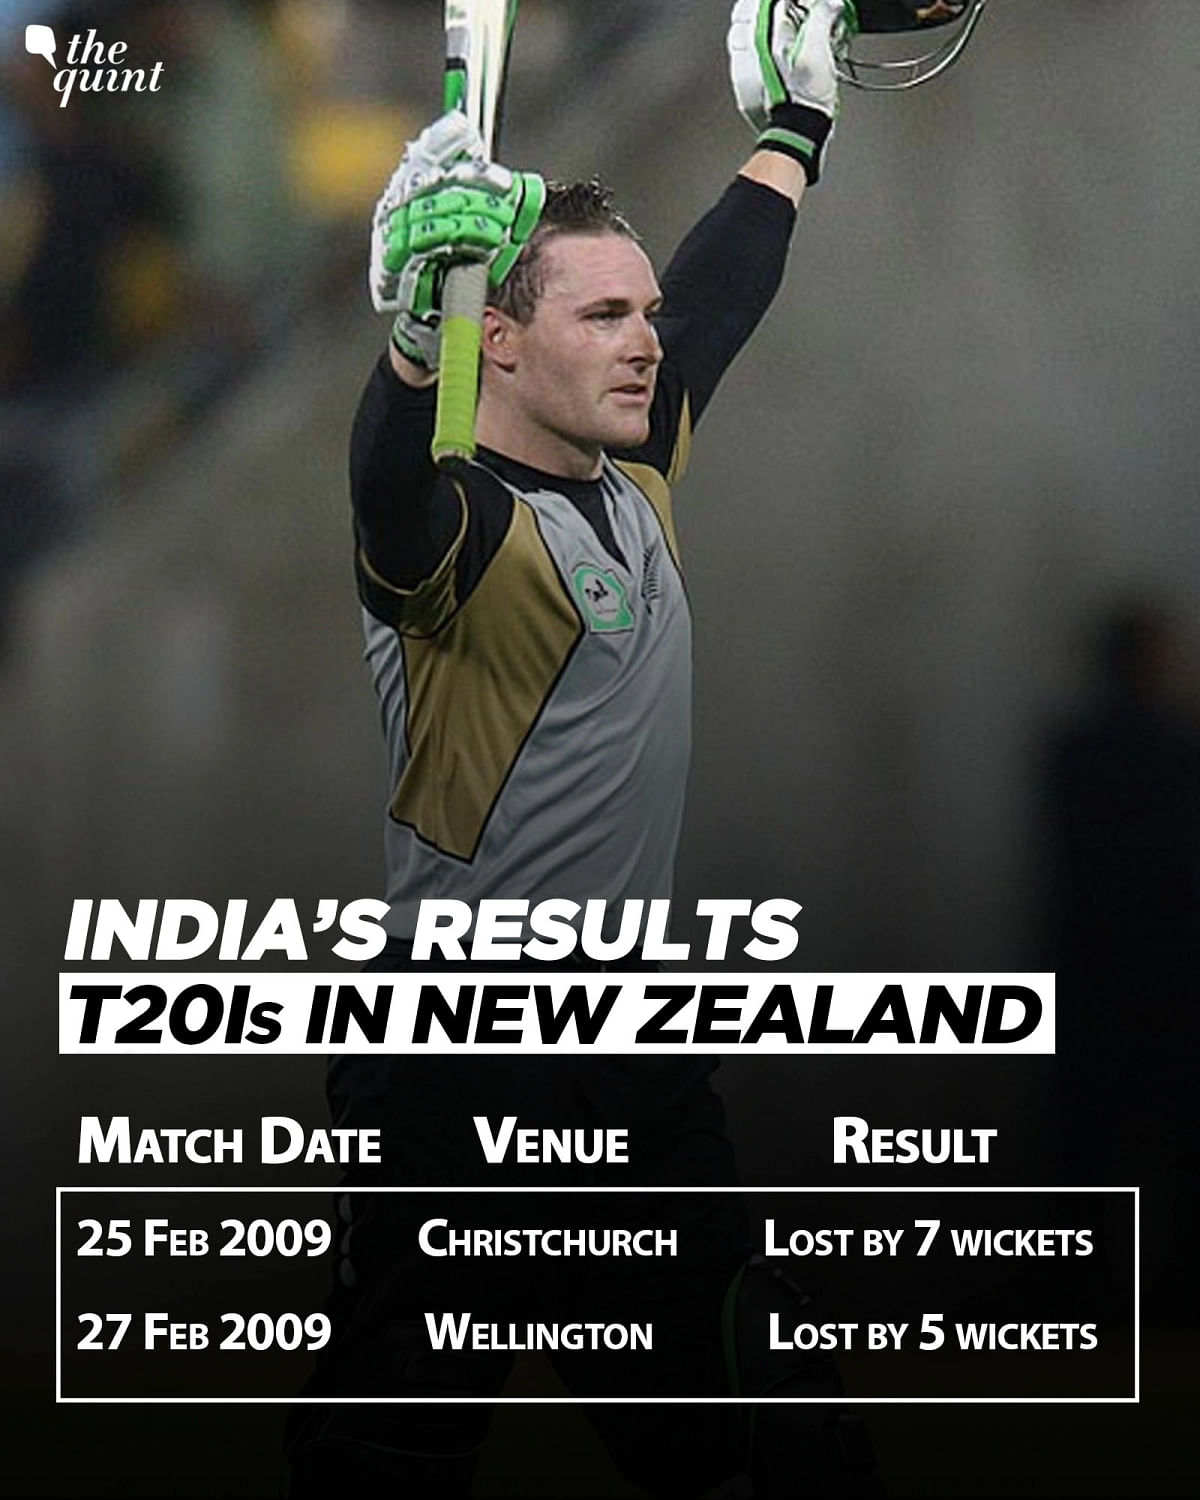 पुराने रिकॉर्ड की बात करें तो भारत के खिलाफ अगर सबसे छोटे फॉर्मेट में कोई टीम सबसे सफल रही है तो वो न्यूजीलैंड है.